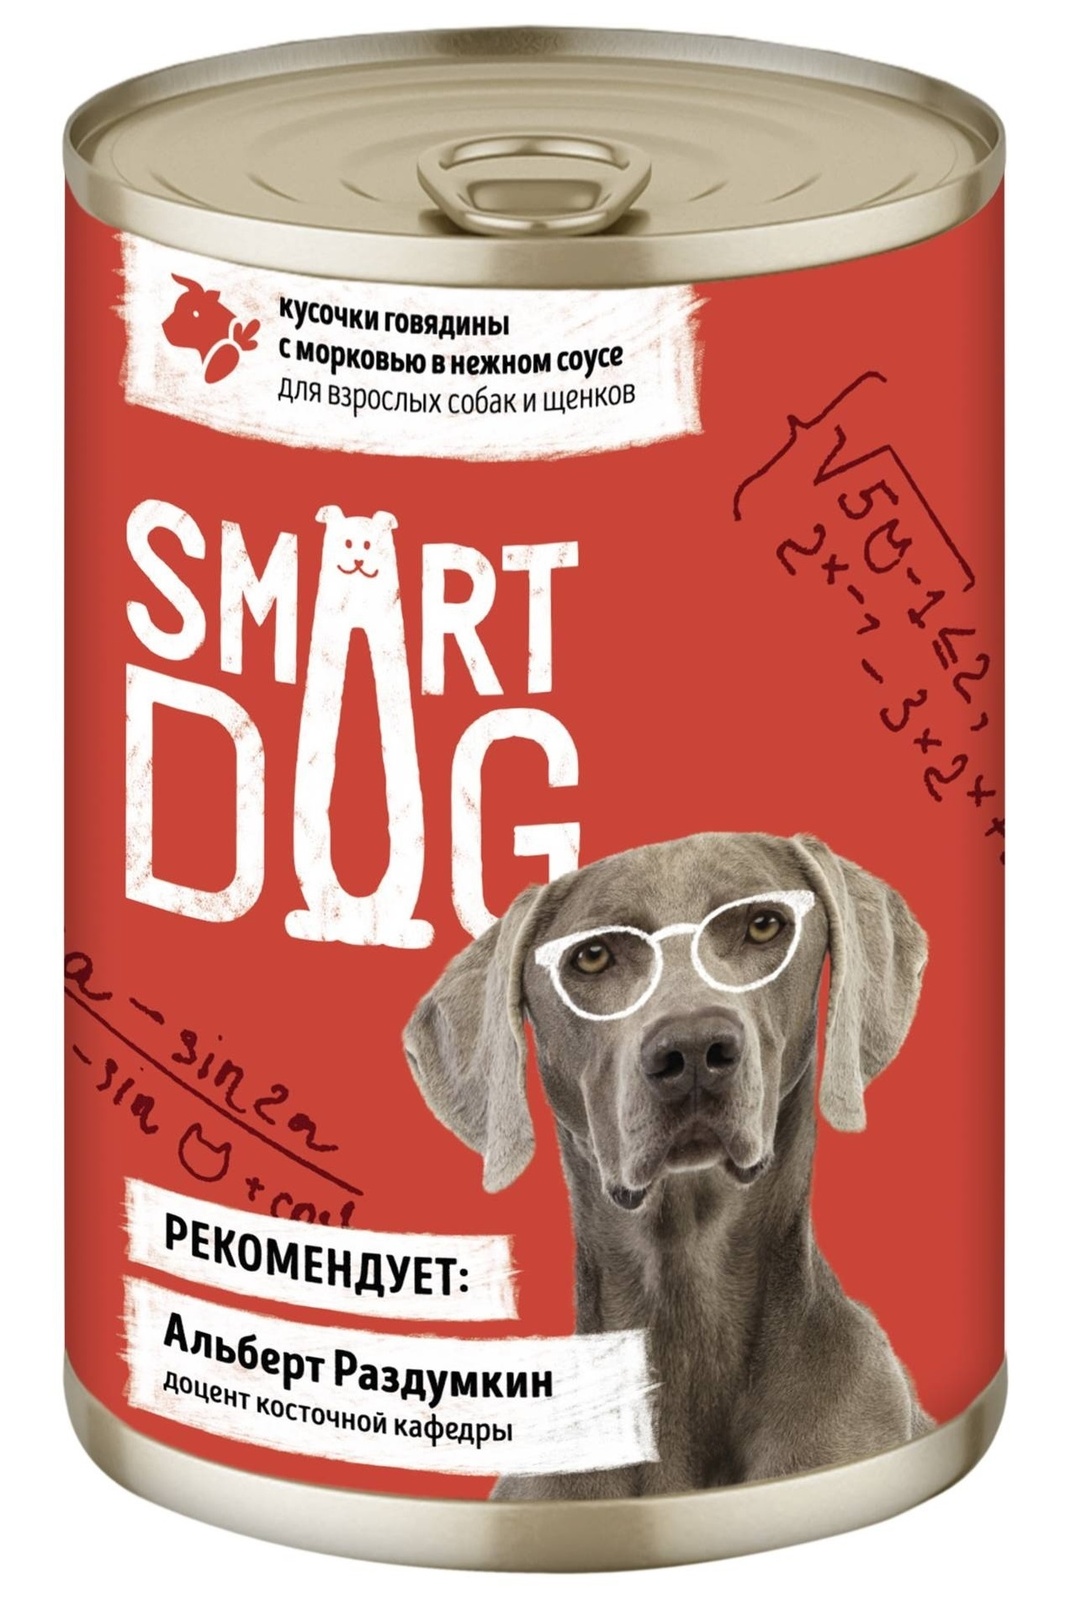 Smart Dog консервы Smart Dog консервы консервы для взрослых собак и щенков кусочки говядины с морковью в нежном соусе (400 г)